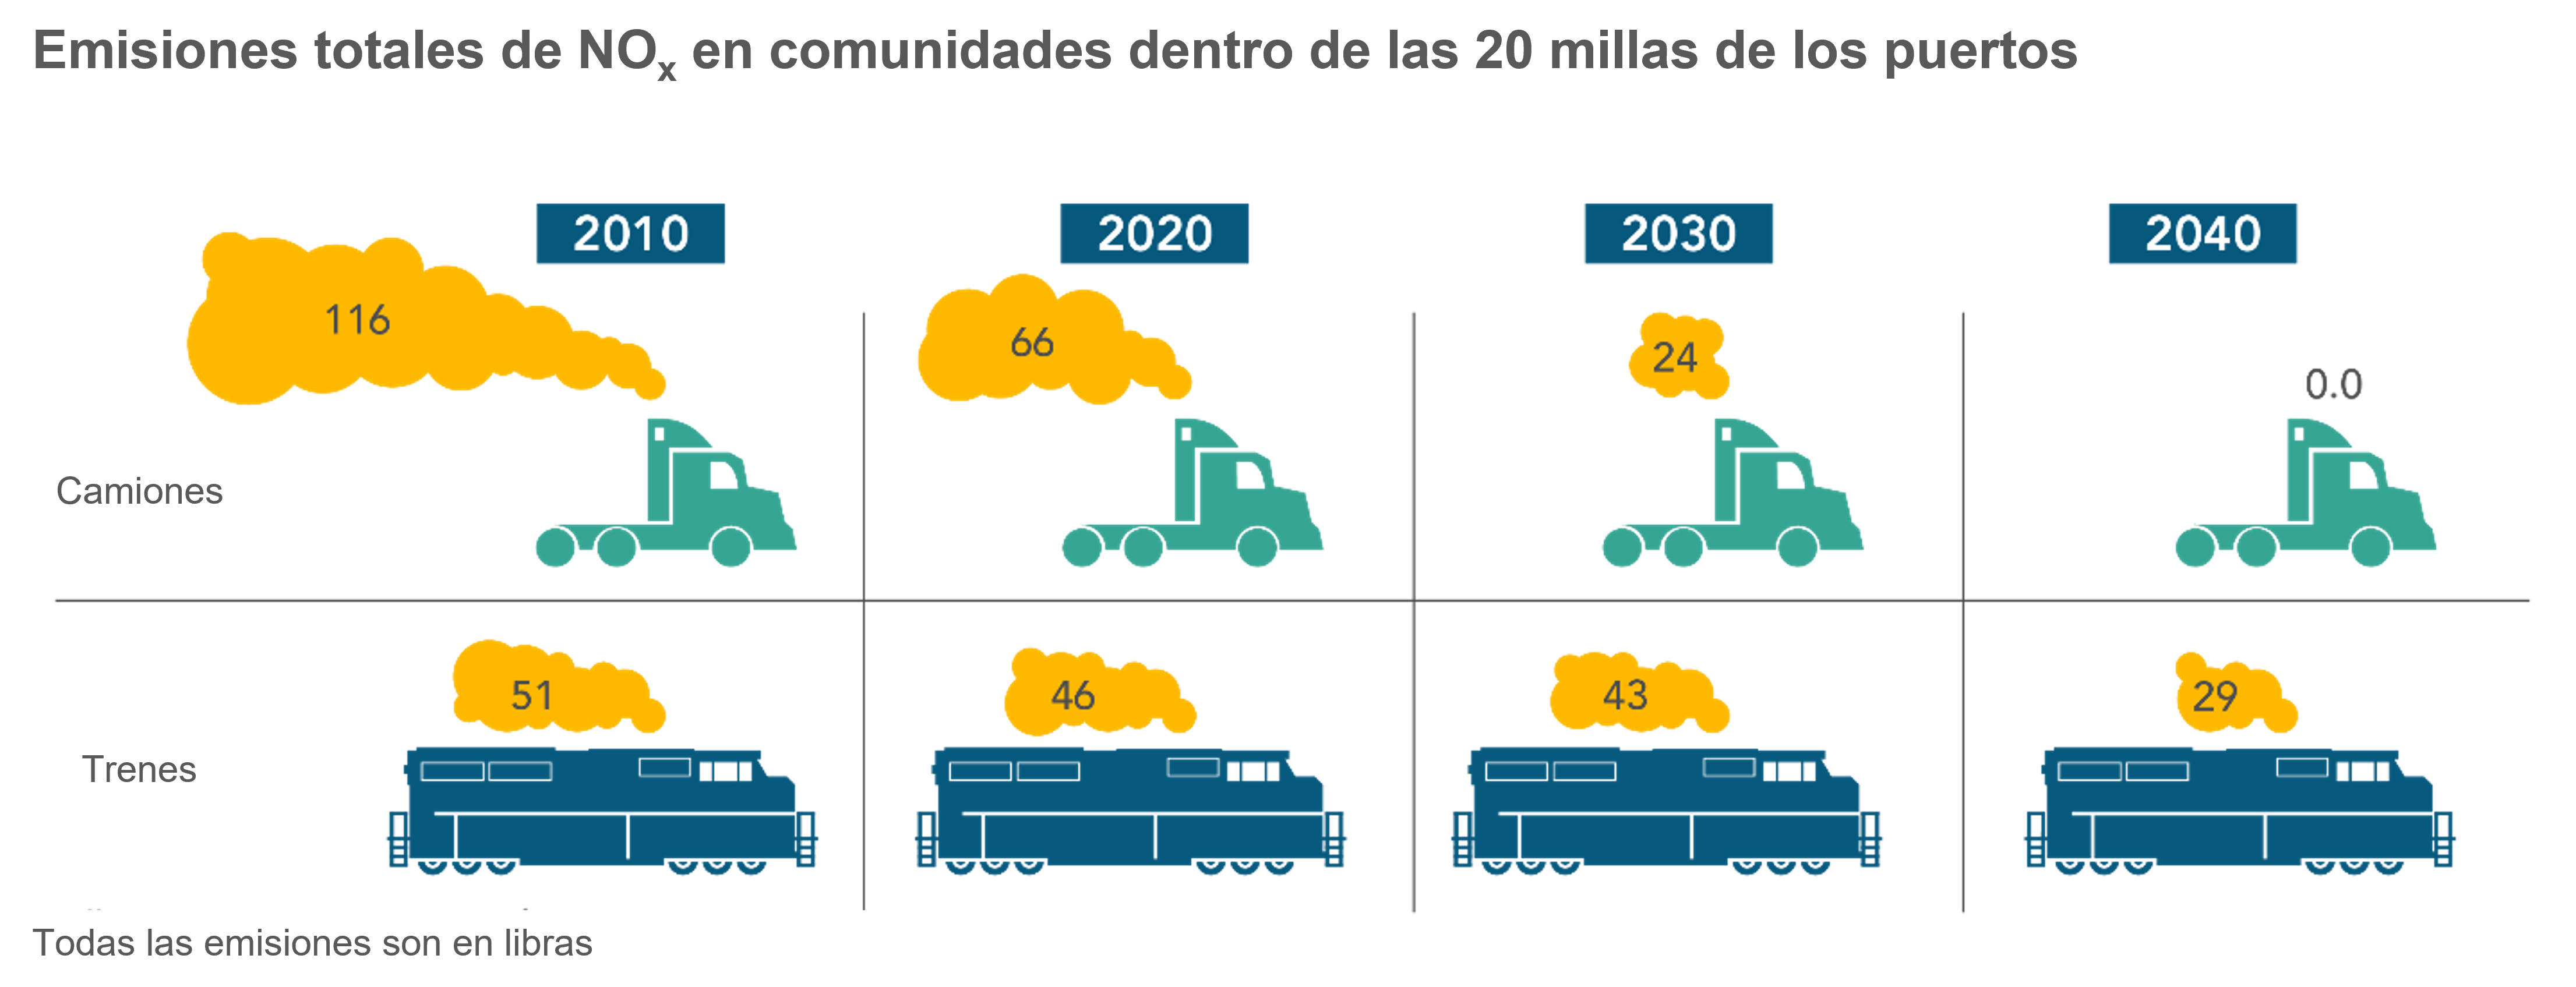 Comparación de las emisiones de NOx de camiones y trenes en comunidades dentro de las 20 millas de los puertos.